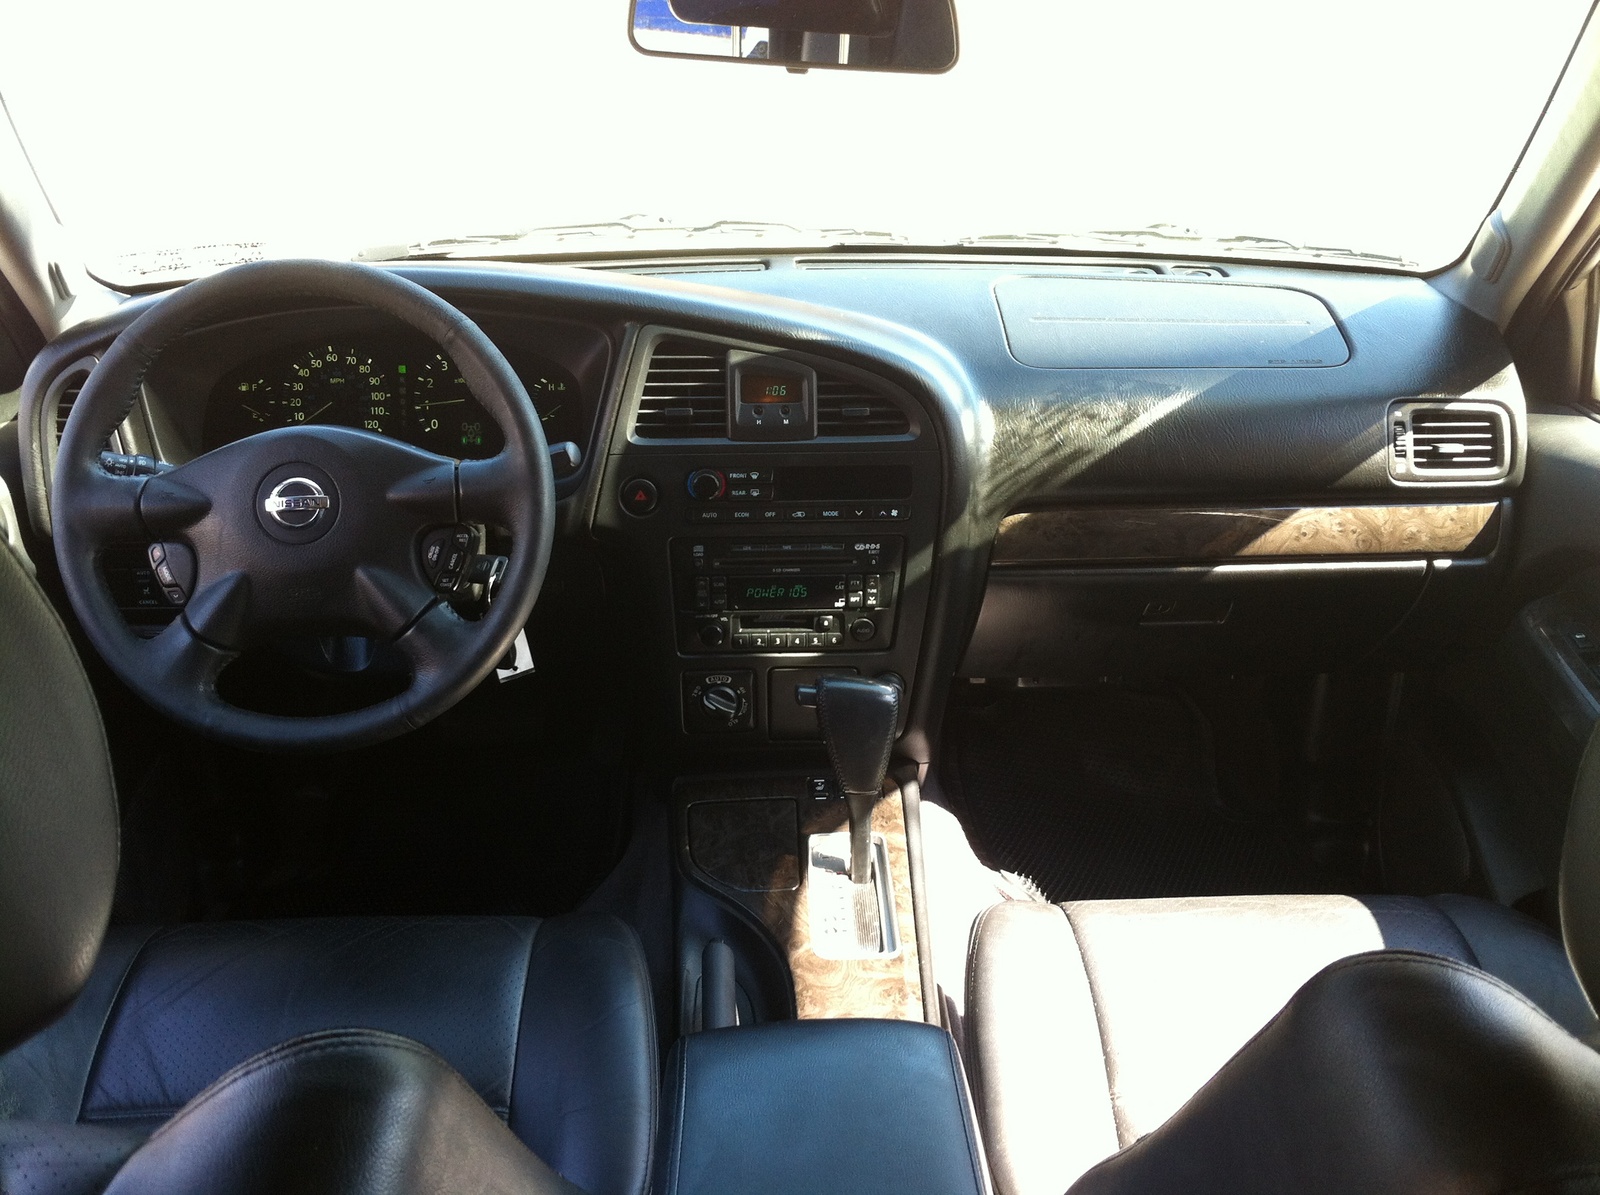 2004 Nissan pathfinder interior pictures #3